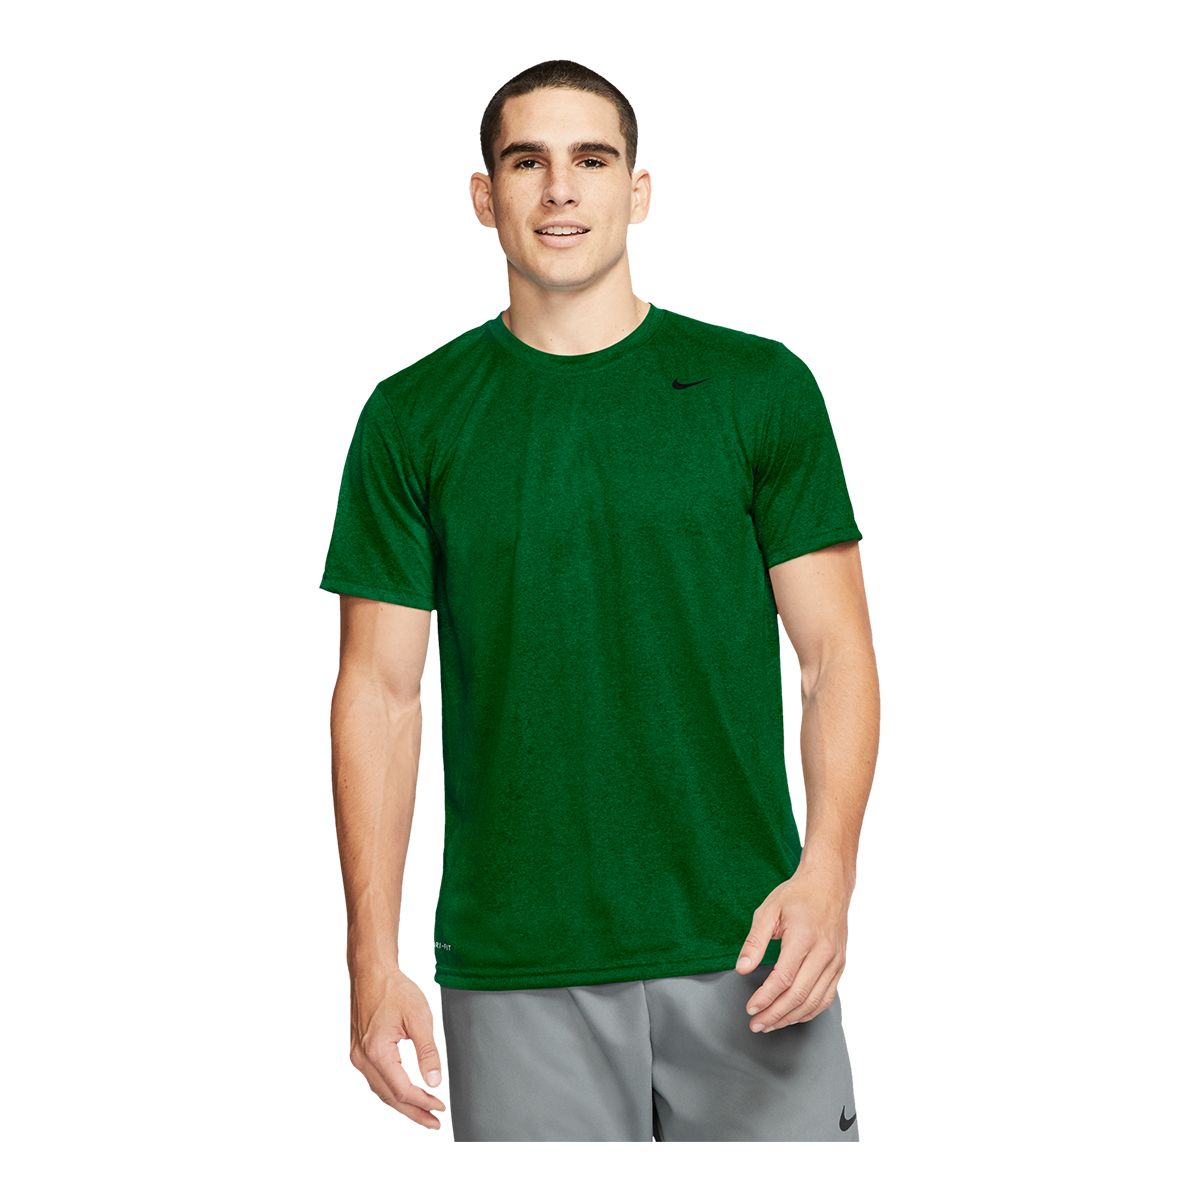 Nike Dri-FIT Legend Logo (MLB Toronto Blue Jays) Men's T-Shirt.